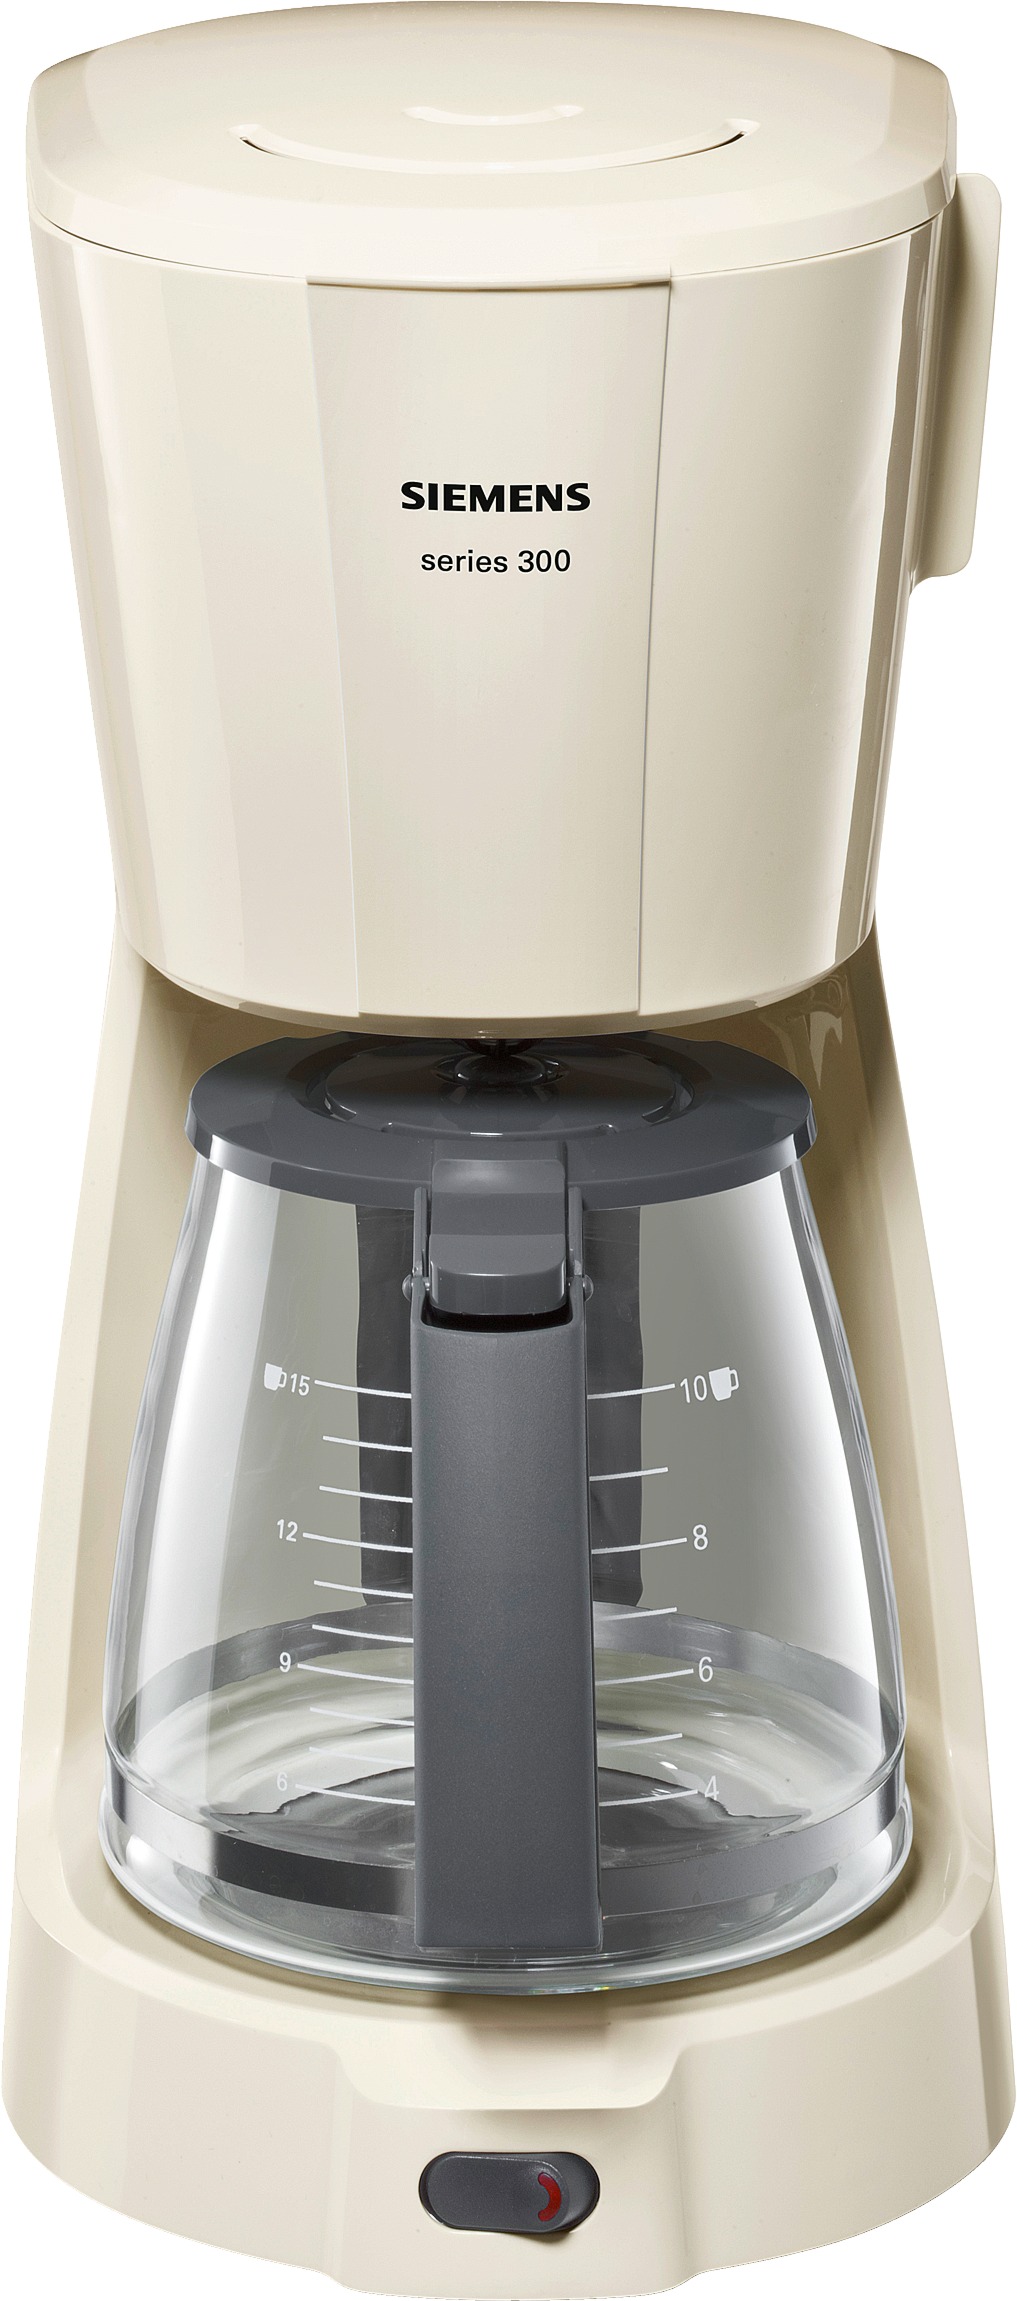 kahve makinası - 10 fincan series 300